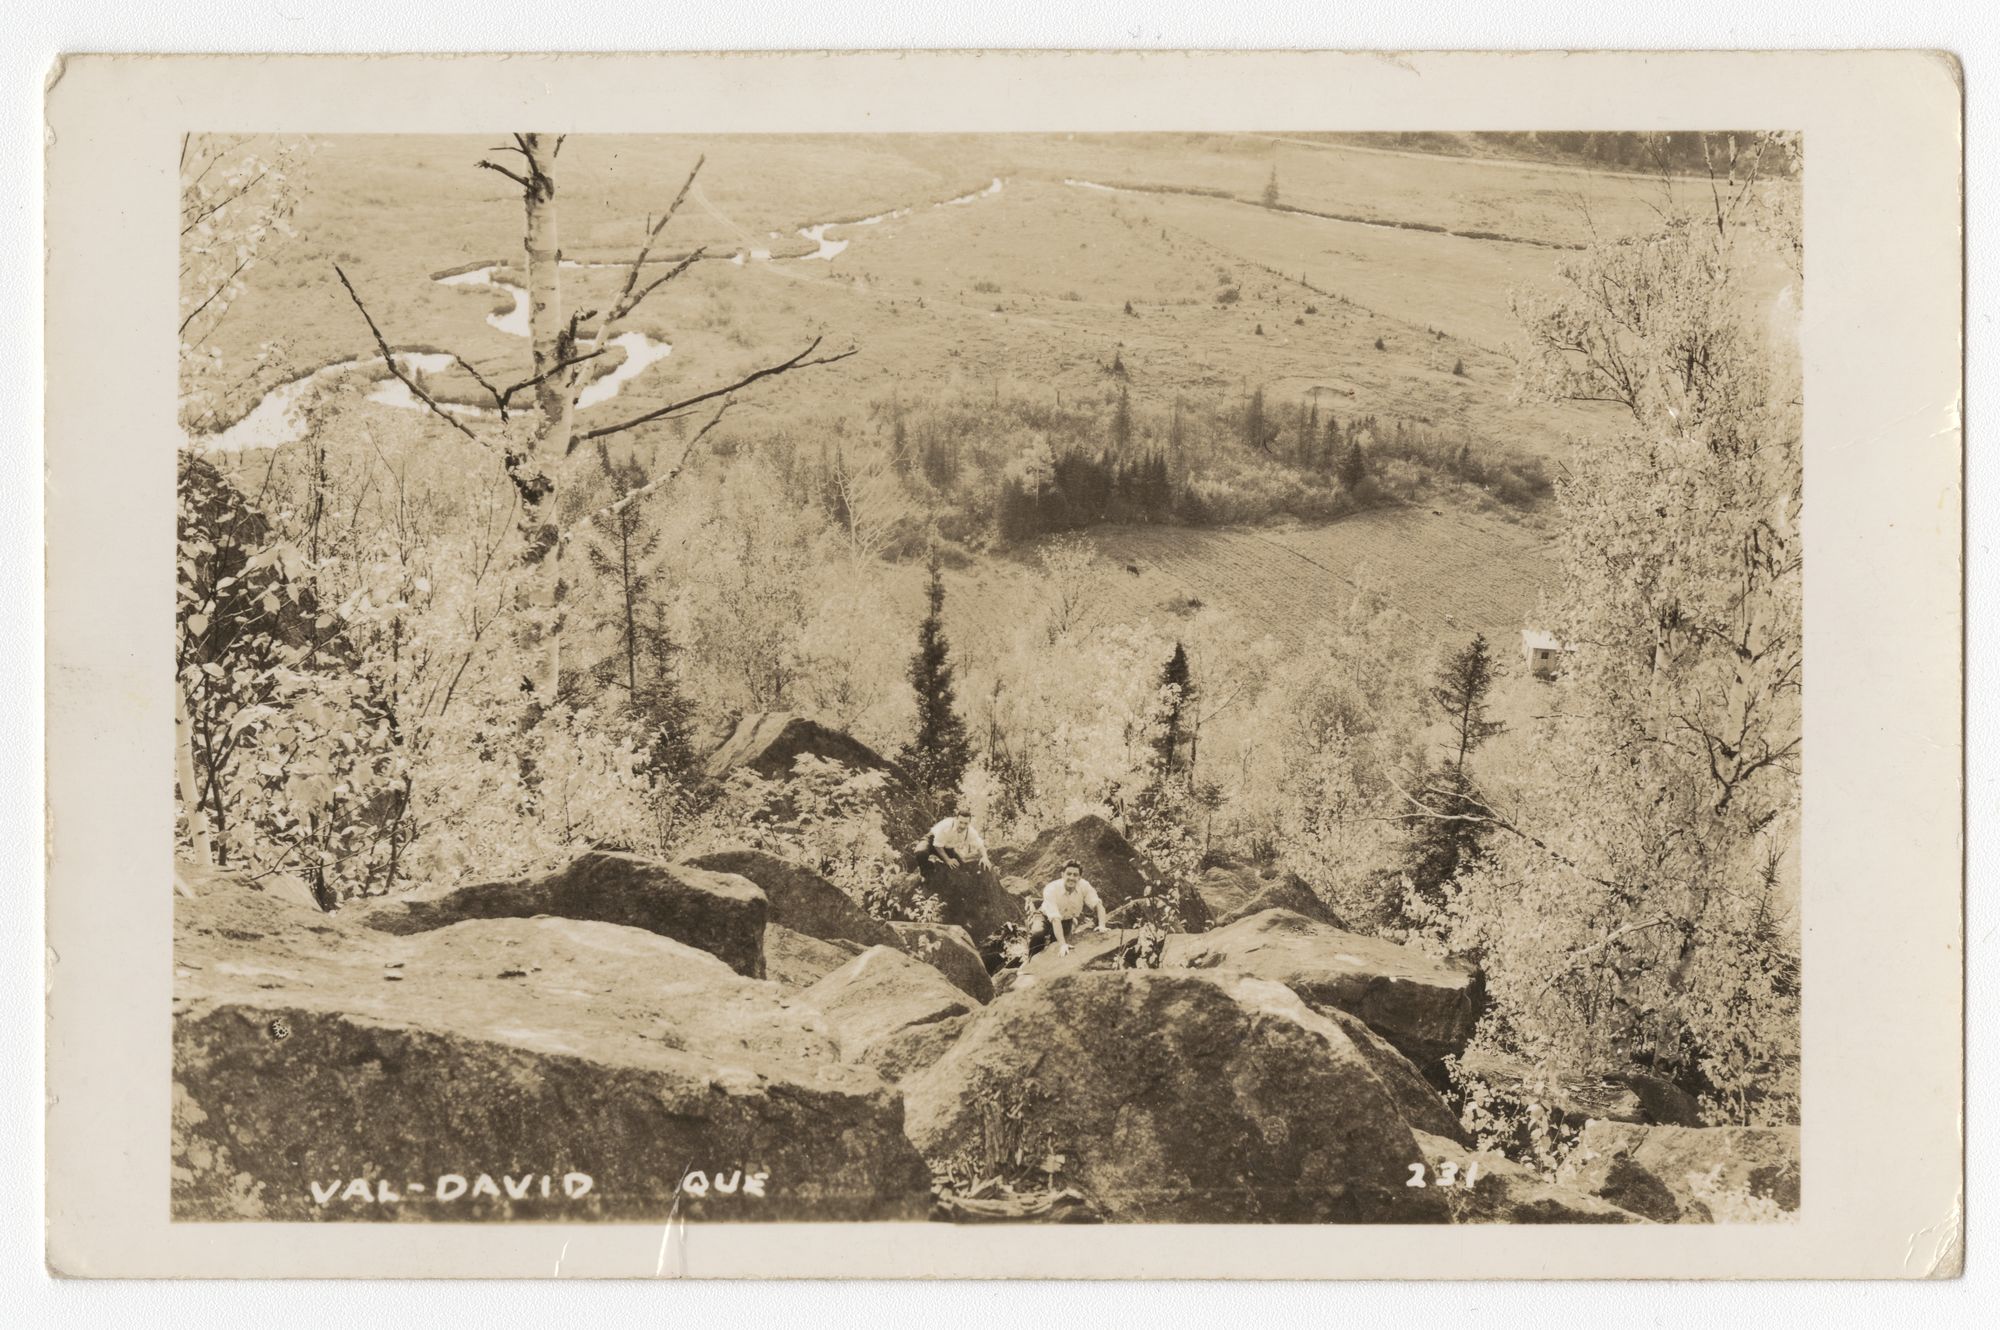 Carte postale prise en plongée depuis un sommet; deux hommes grimpent un amoncellement de rochers. En arrière-plan une partie de la vallée de Val-David. 